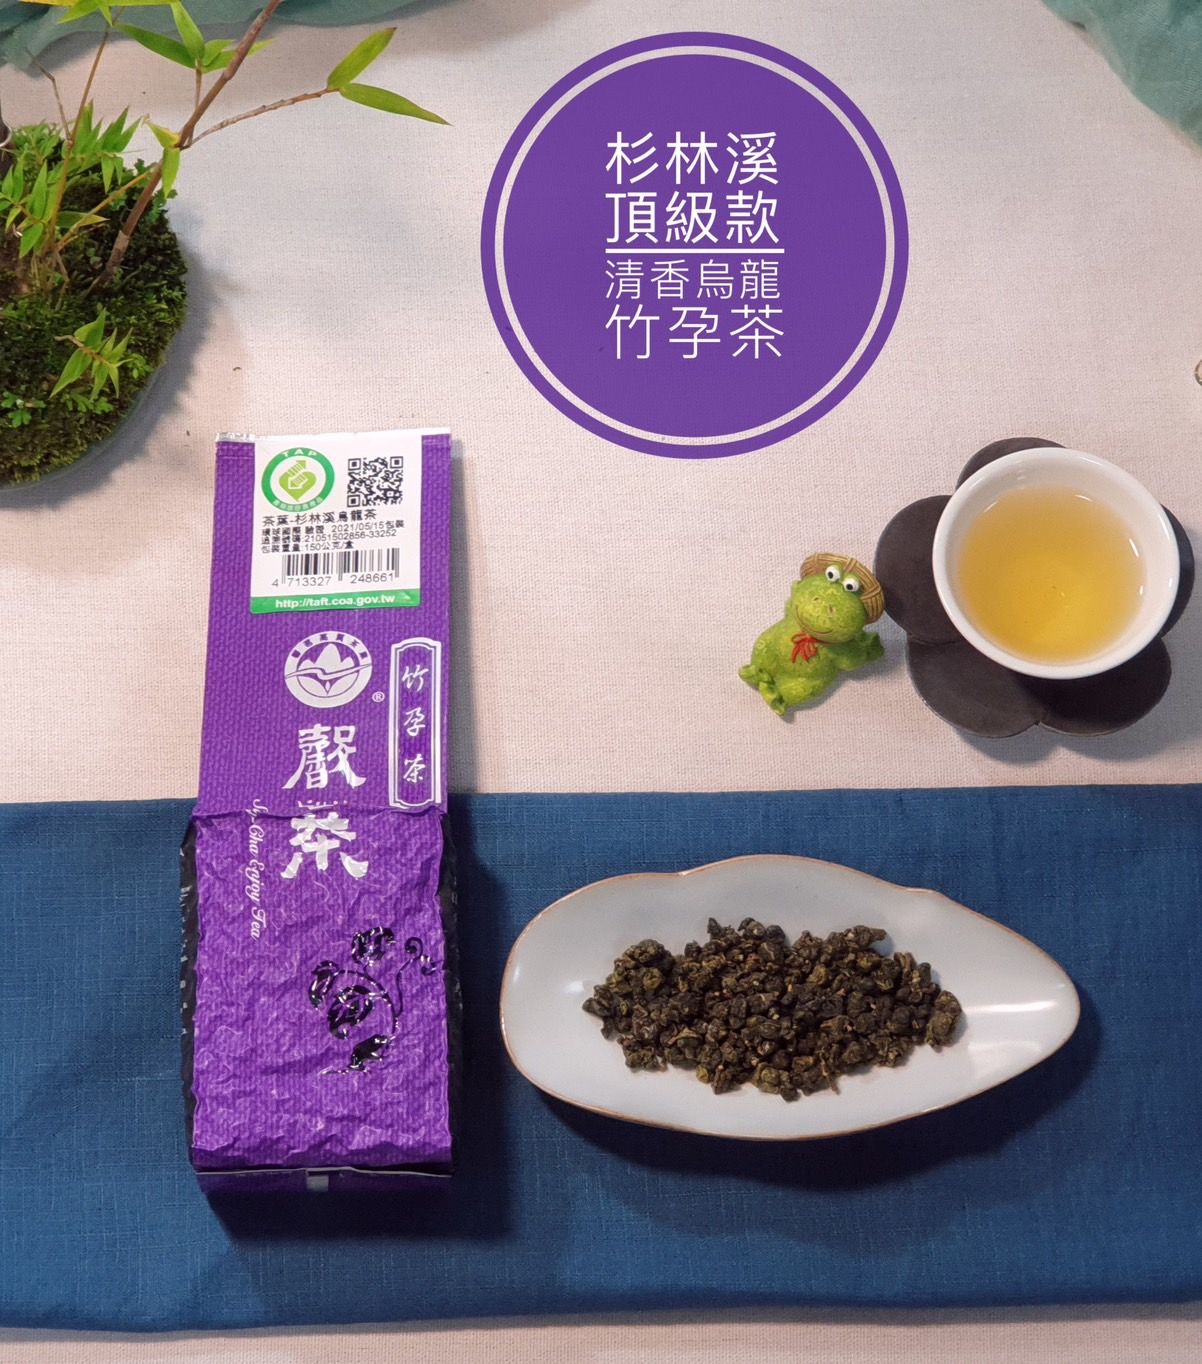 竹孕茶-清香頂級款-杉林溪產銷產地驗證第一品牌-特優五星衛生安全製茶廠監製